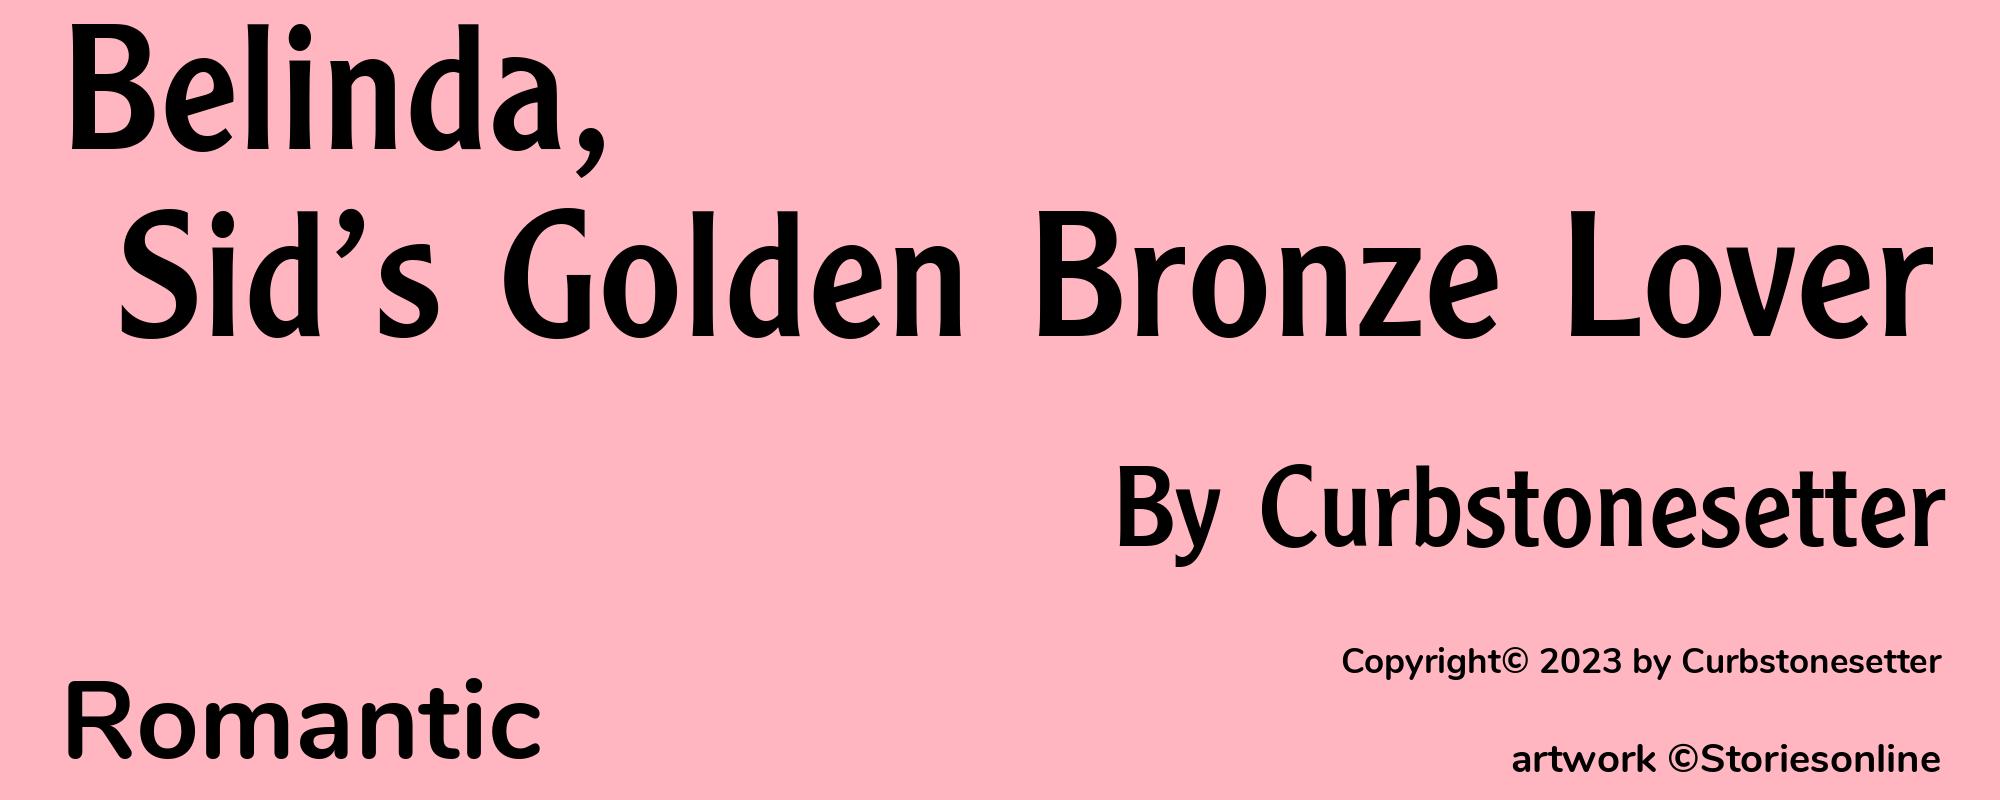 Belinda, Sid’s Golden Bronze Lover - Cover